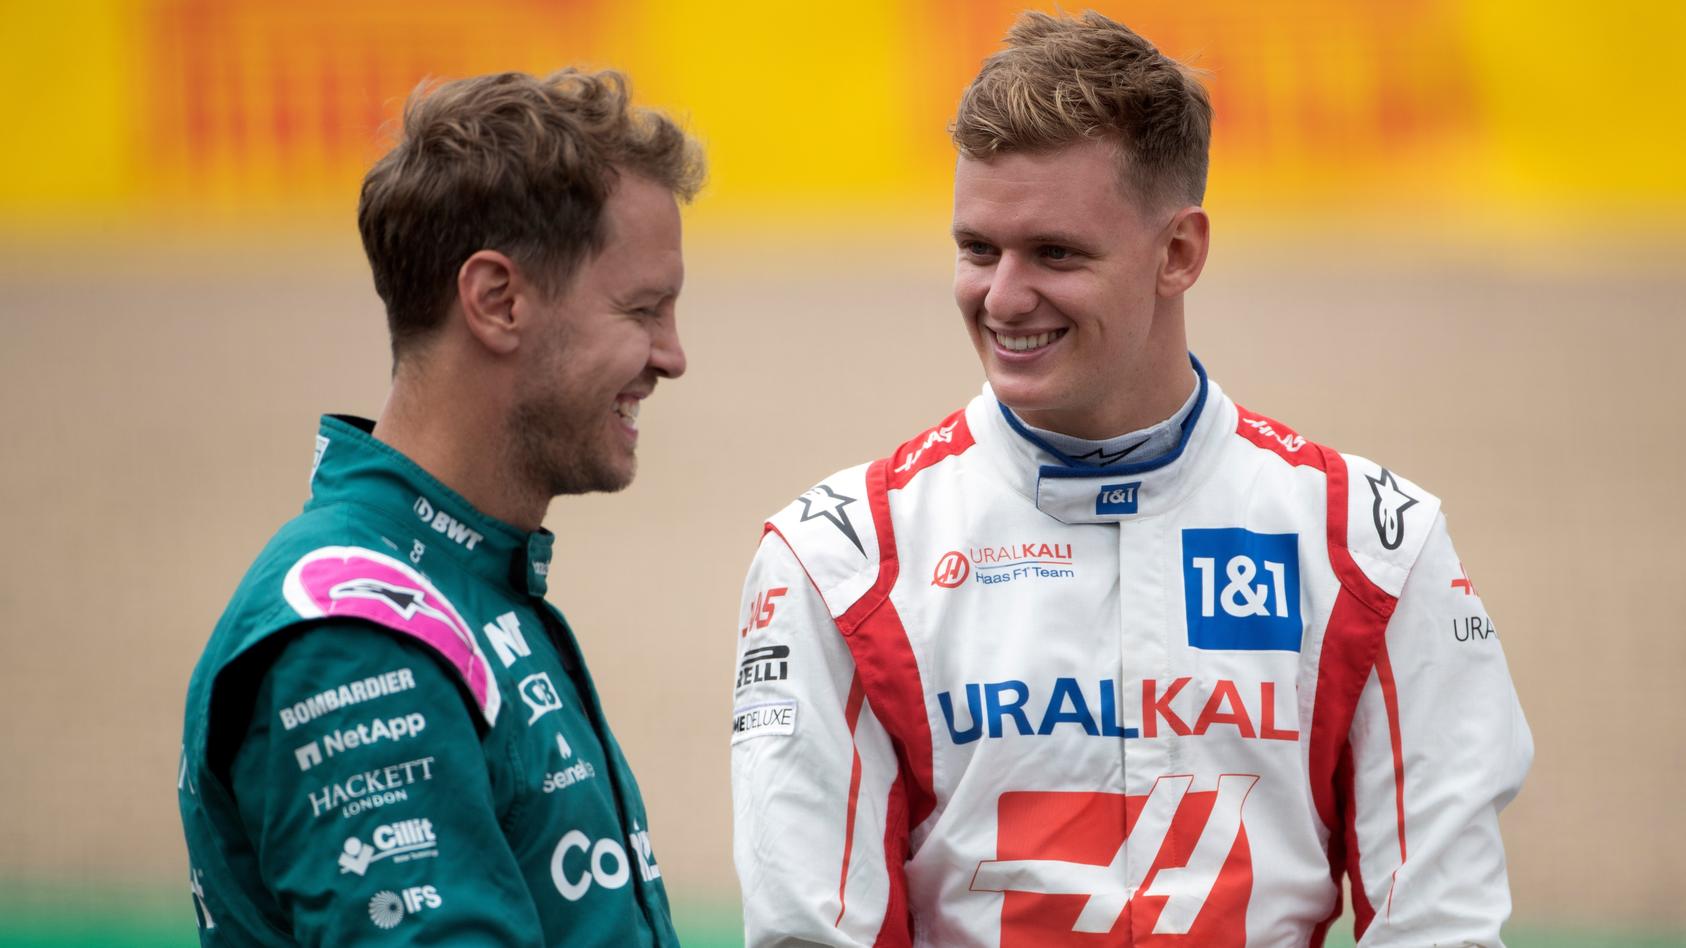 2022 is klar, aber danach ... - Wie geht's für Vettel und Mick weiter?